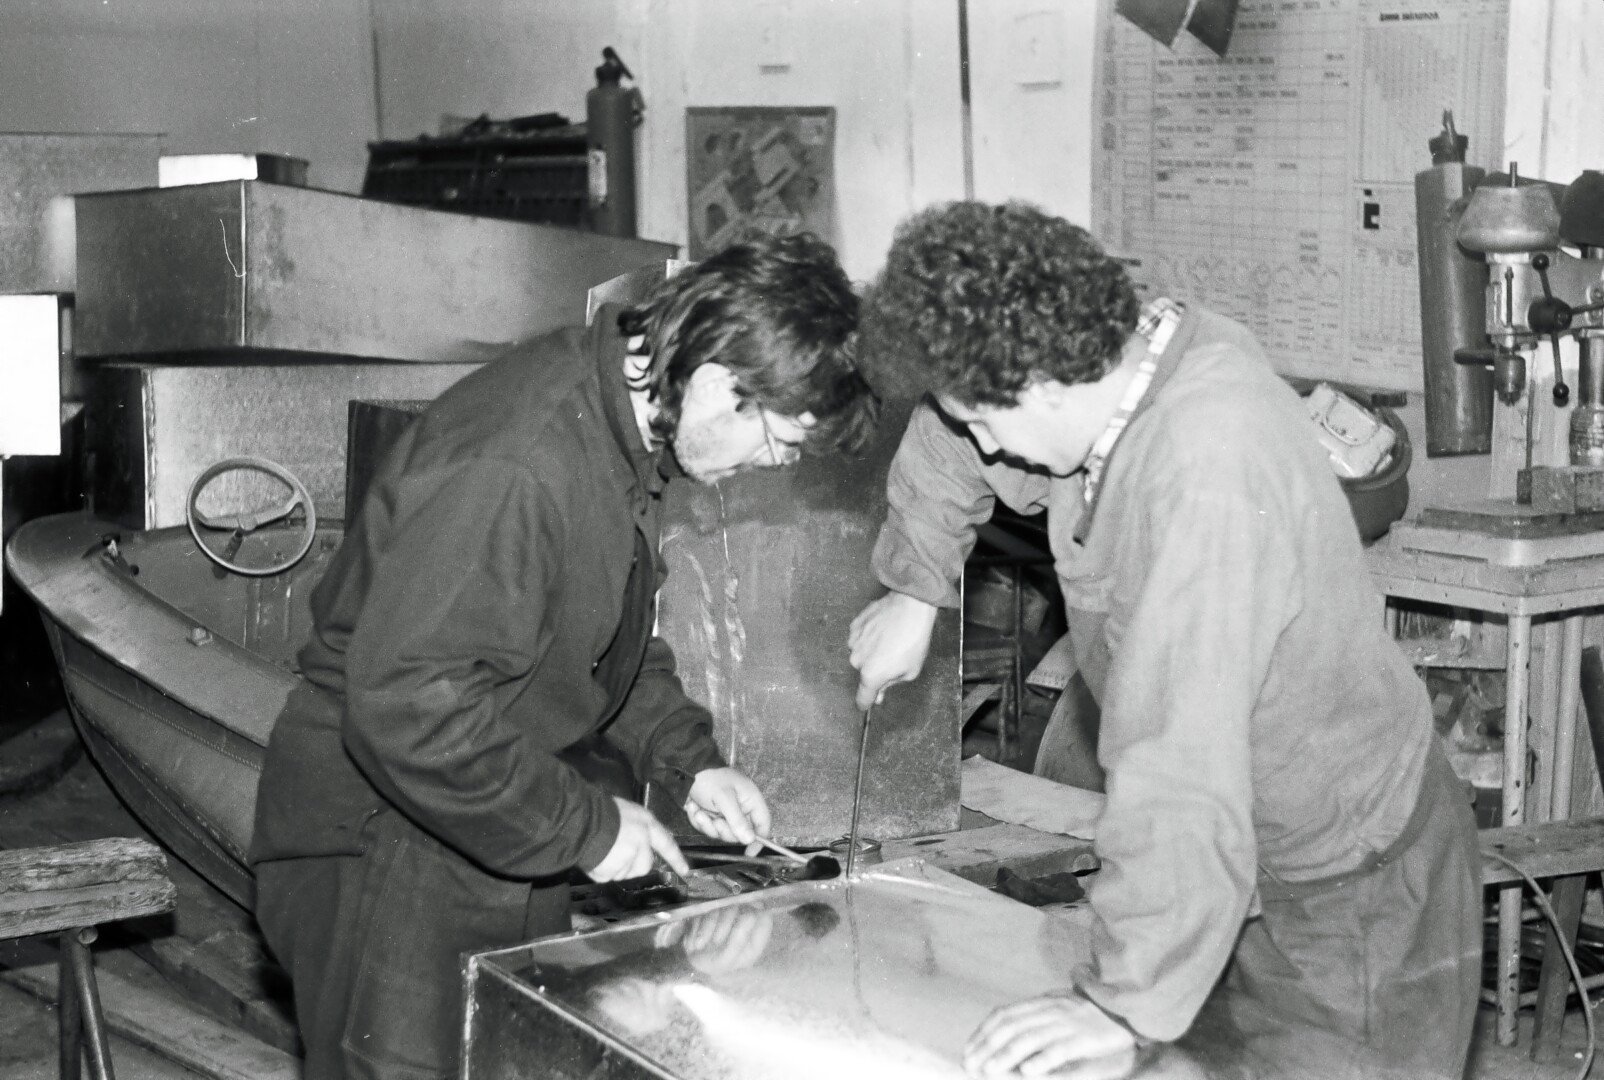 Ekspedicijos dalyviai Virginijus Kedys ir Jonas Jarutis daro cinkuotus karstus Igarkos kariniame aerodrome. J. JARUČIO archyvų nuotr.